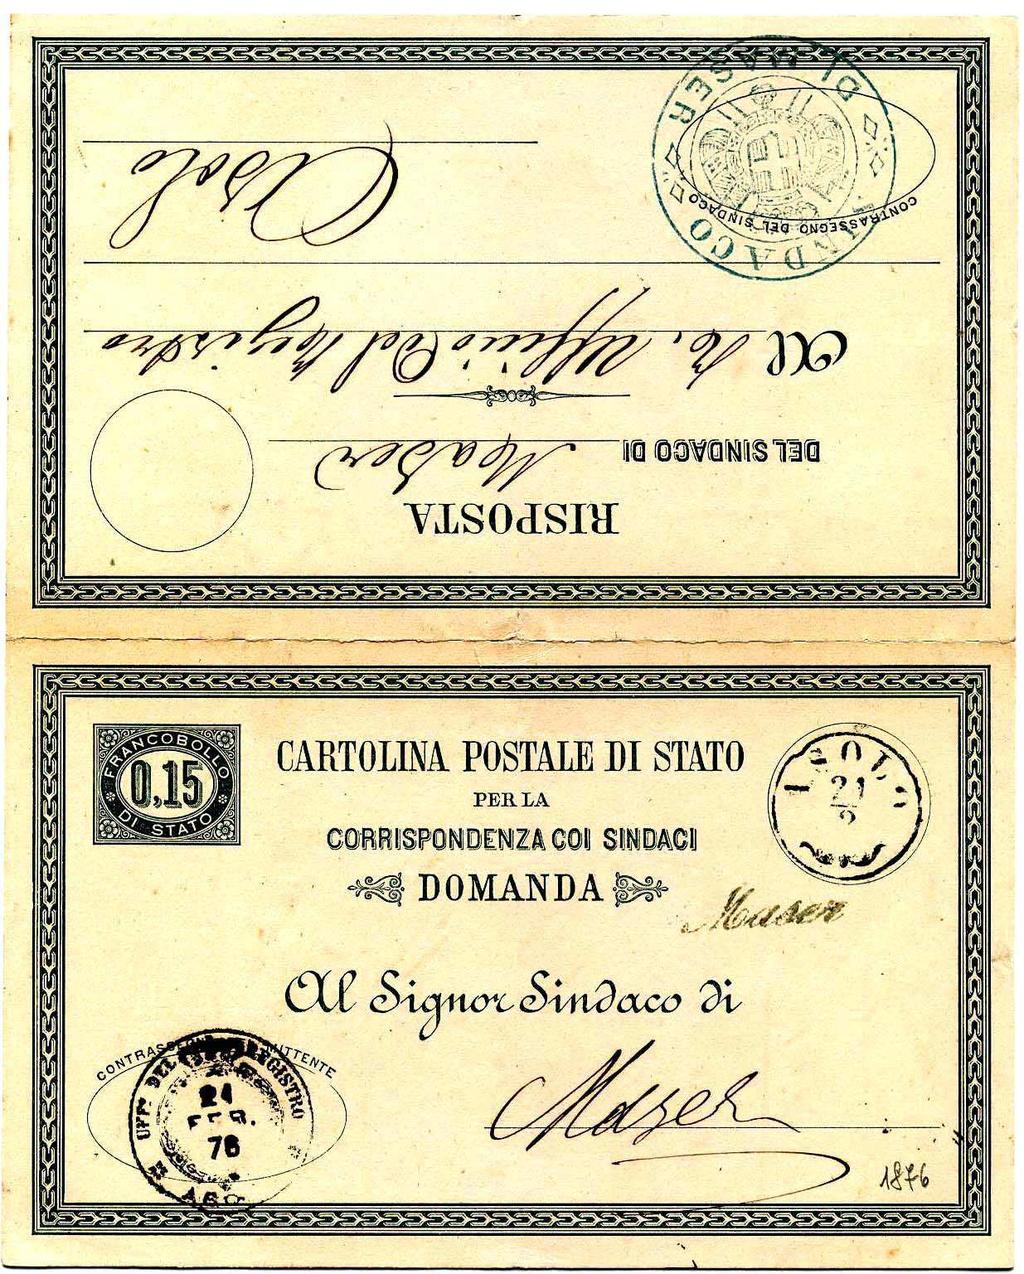 1876 ASOLO 21/2 1876 Bollo austriaco abbinato col bollo di collettoria MASER. Cartolina postale di Stato da 15 cent. formata dalle due parti separabili, DOMANDA e RISPOSTA, ancora unite.